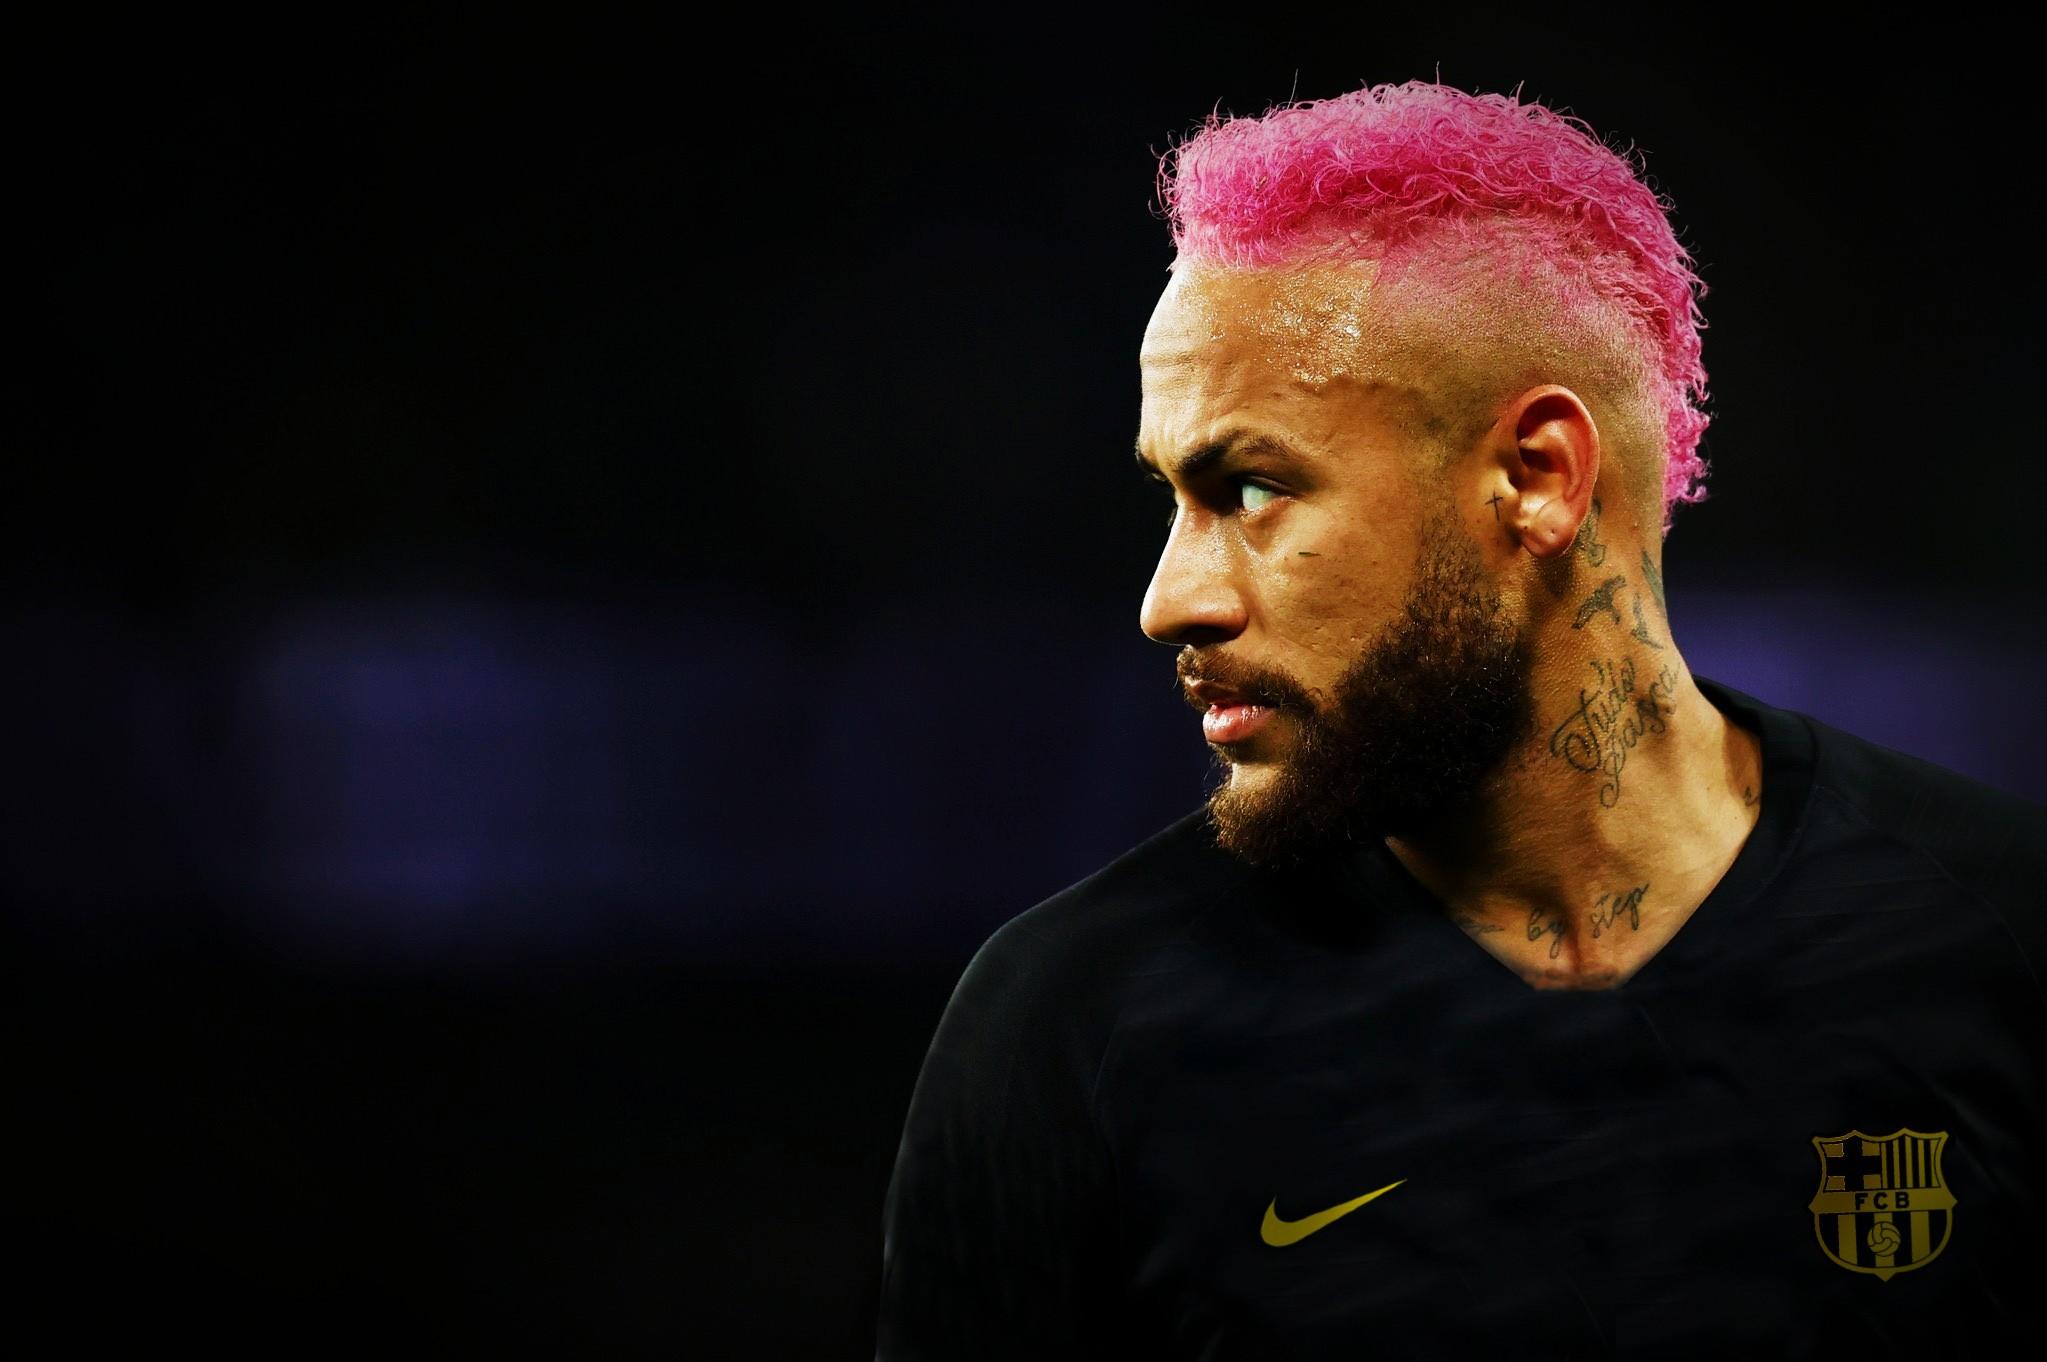 Neymar pink hair wallpaper